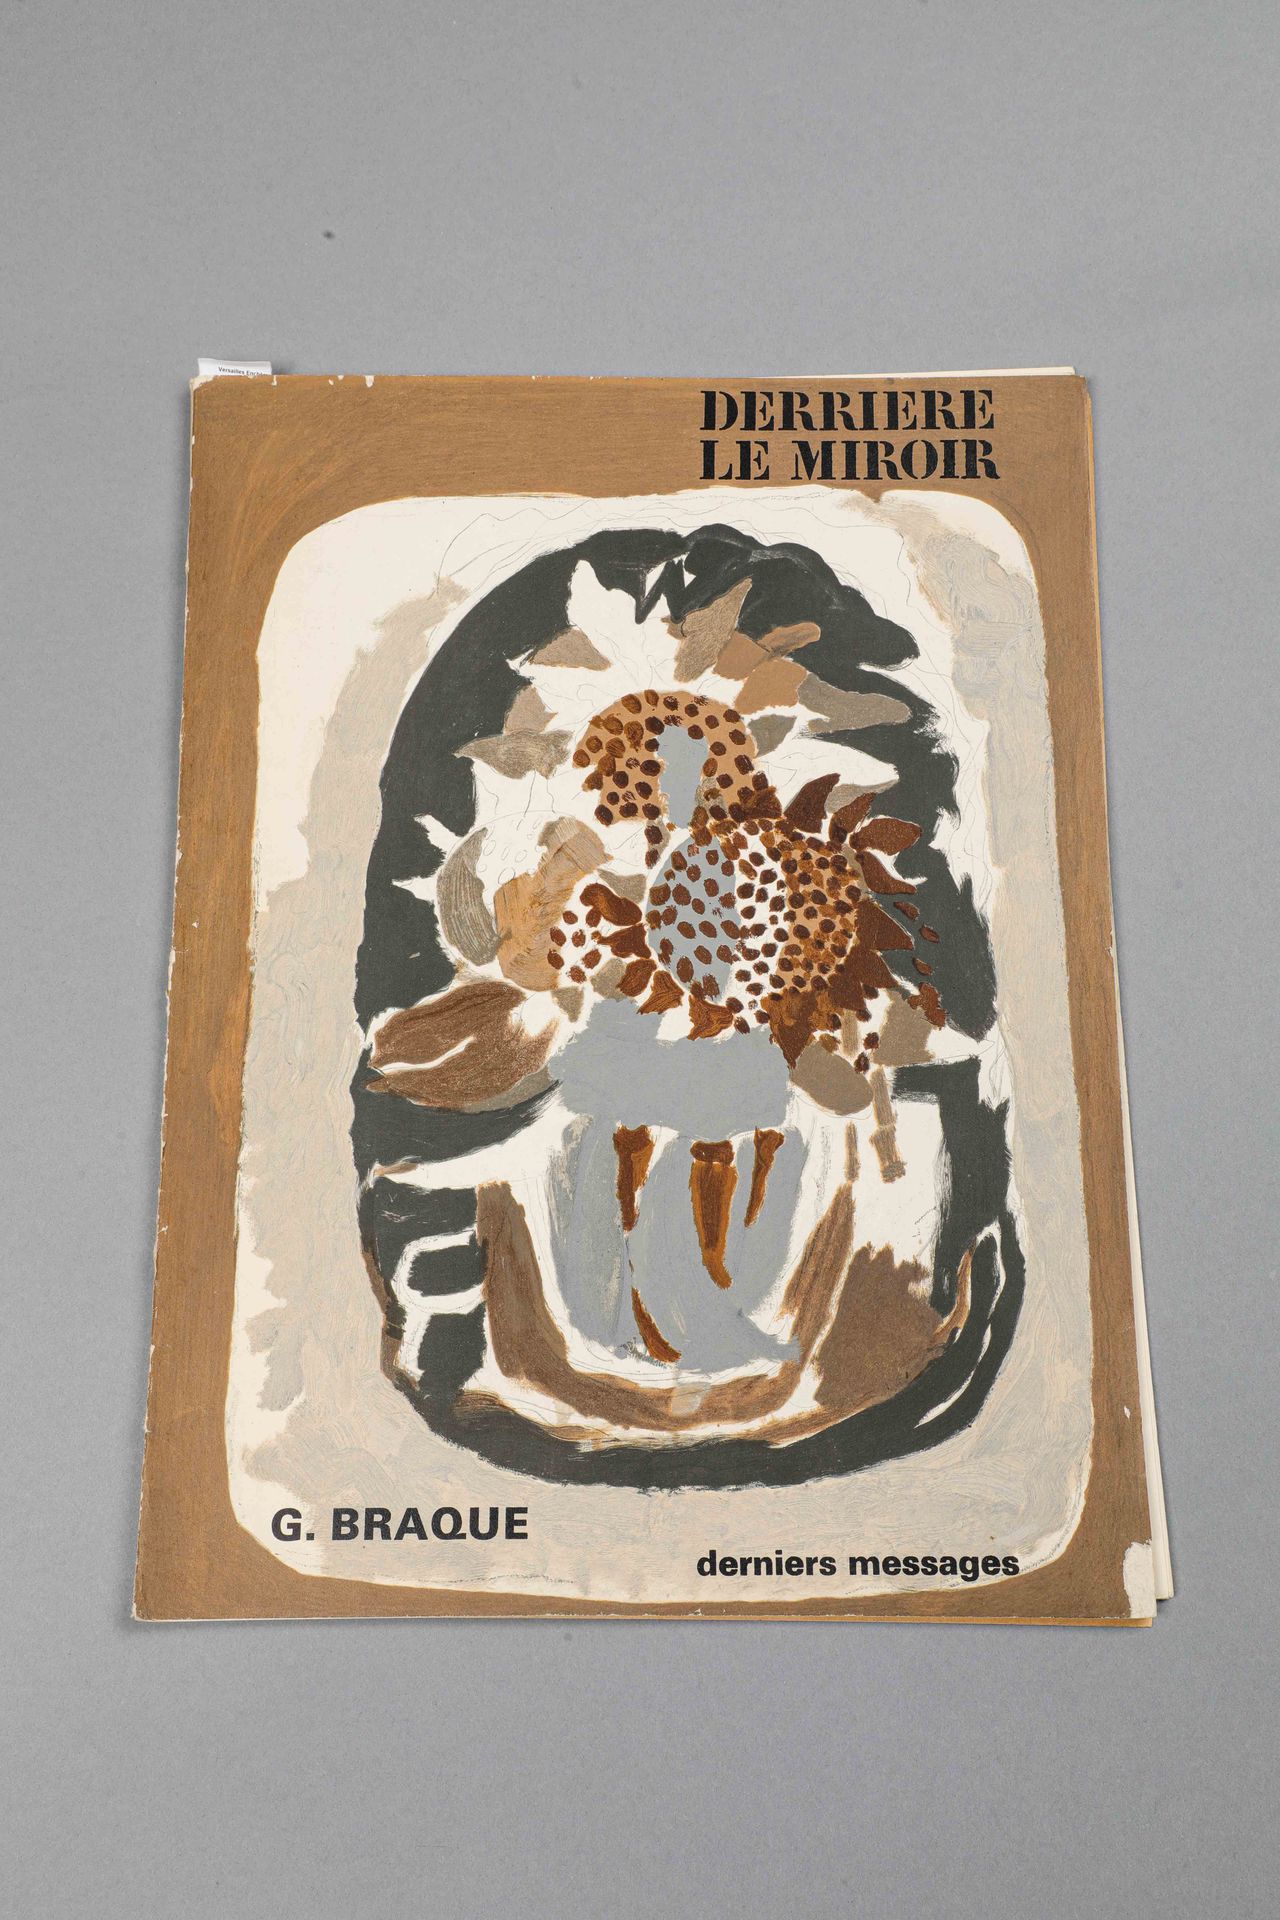 Null Georges BRAQUE (1882-1963) Eine Kopie von DERRIERE LE MIROIR komplett